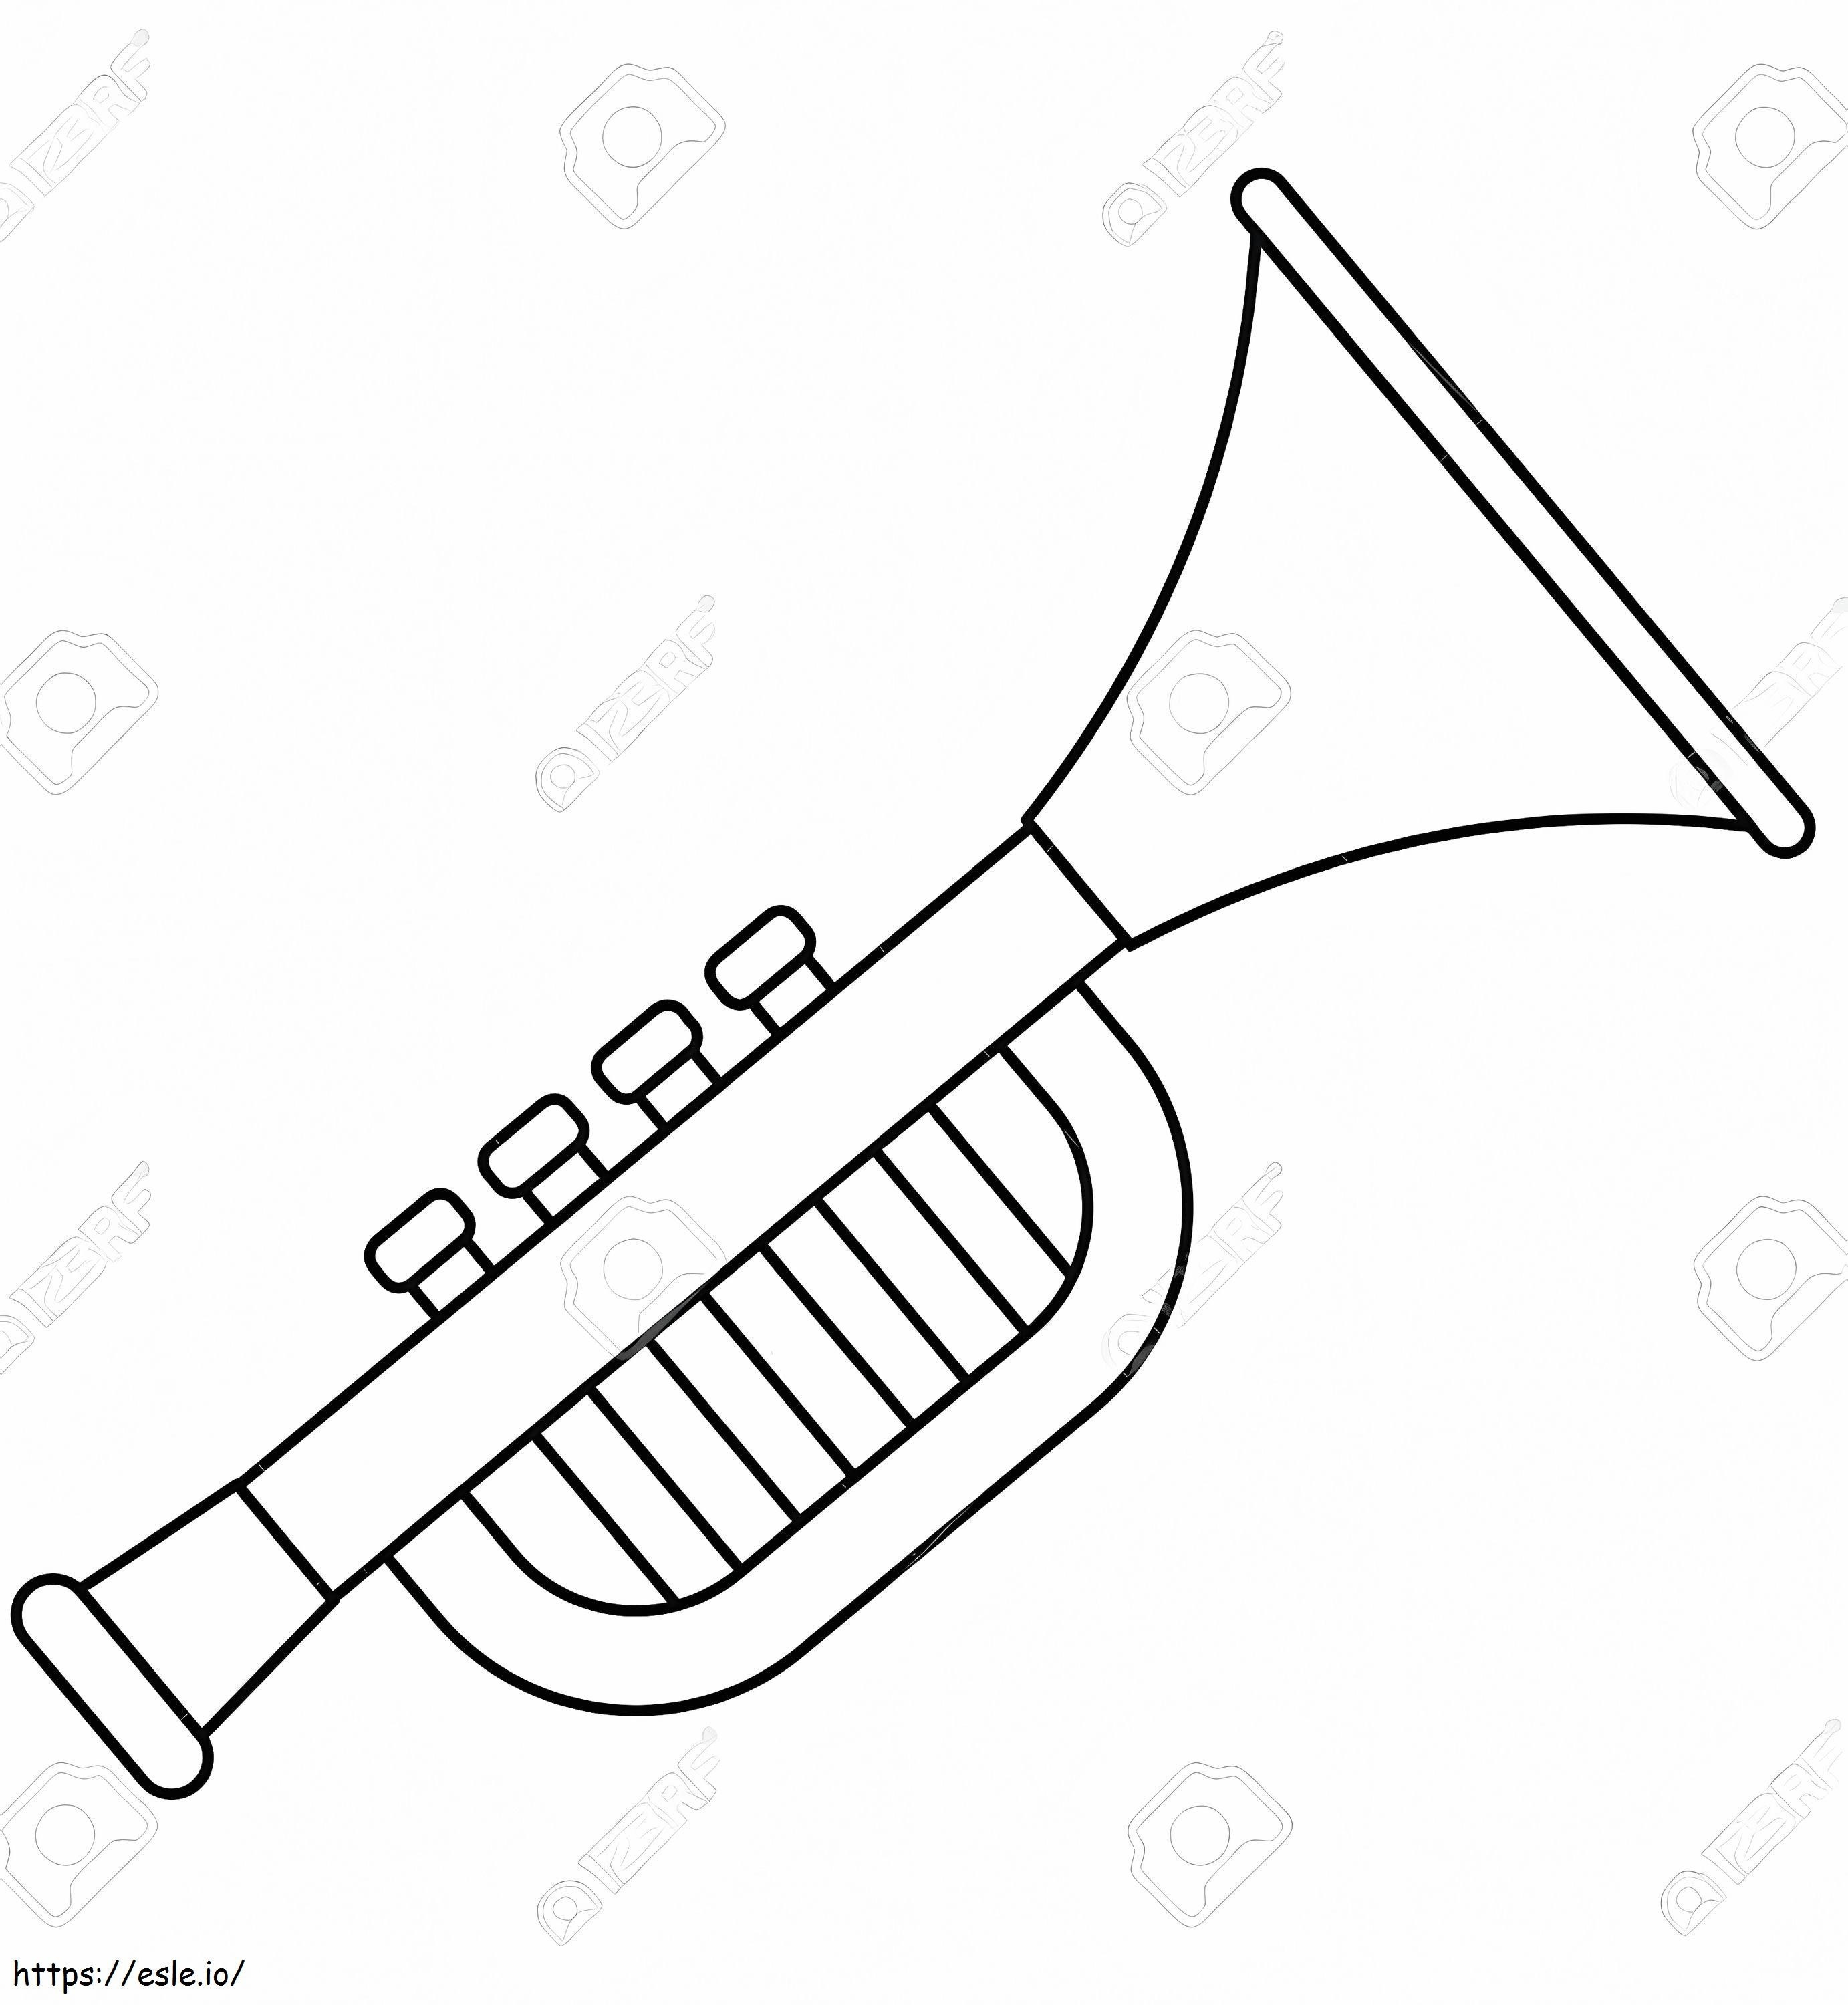 Eenvoudige trompet 3 kleurplaat kleurplaat